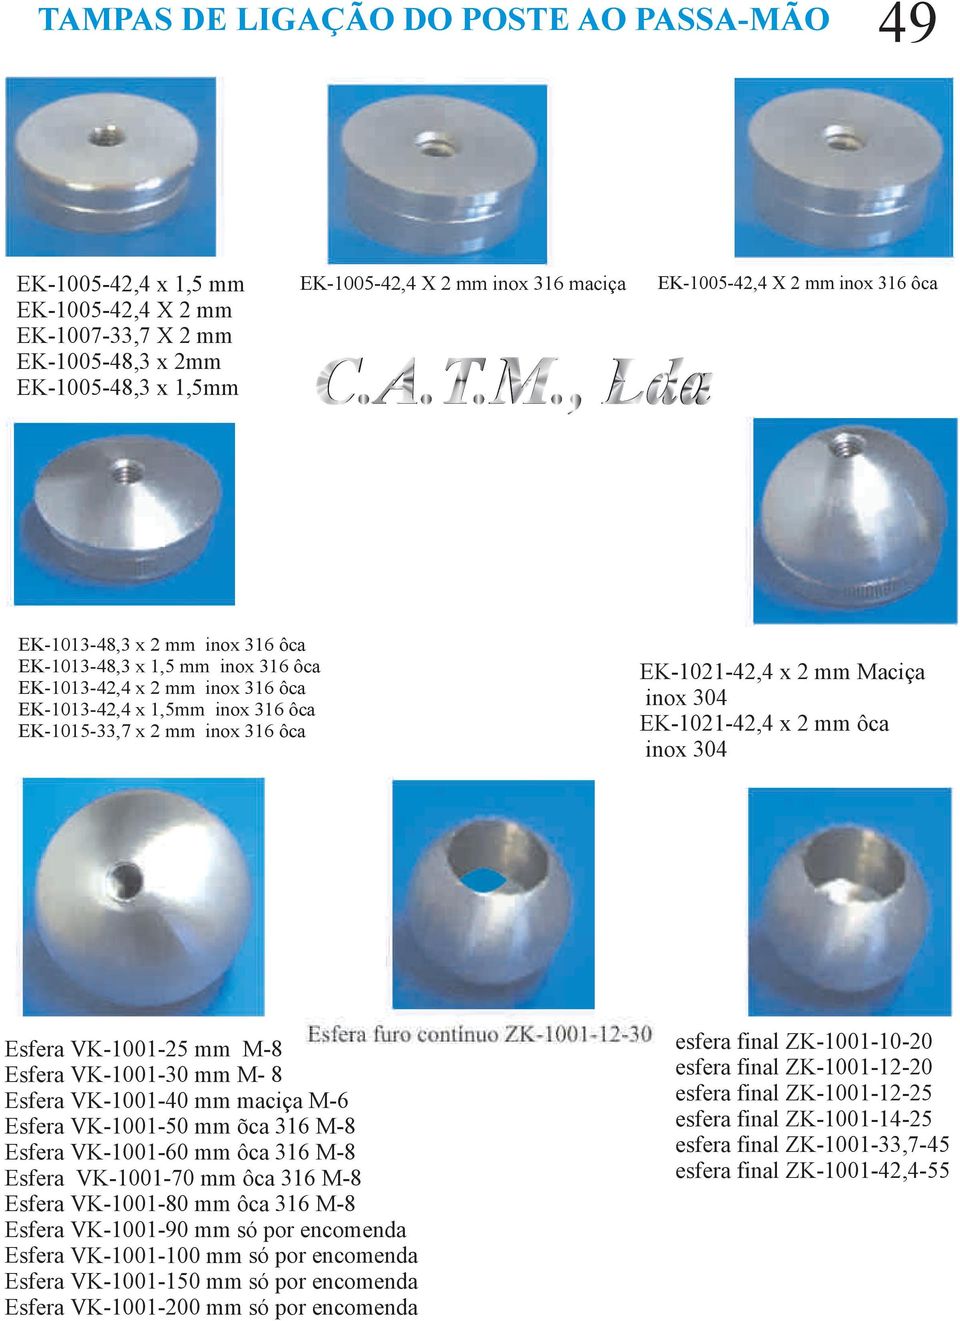 ôca EK-1021-42,4 x 2 mm Maciça inox 304 EK-1021-42,4 x 2 mm ôca inox 304 Esfera VK-1001-25 mm M-8 Esfera Esfera Esfera Esfera Esfera Esfera Esfera Esfera Esfera Esfera VK-1001-30 mm M- 8 VK-1001-40